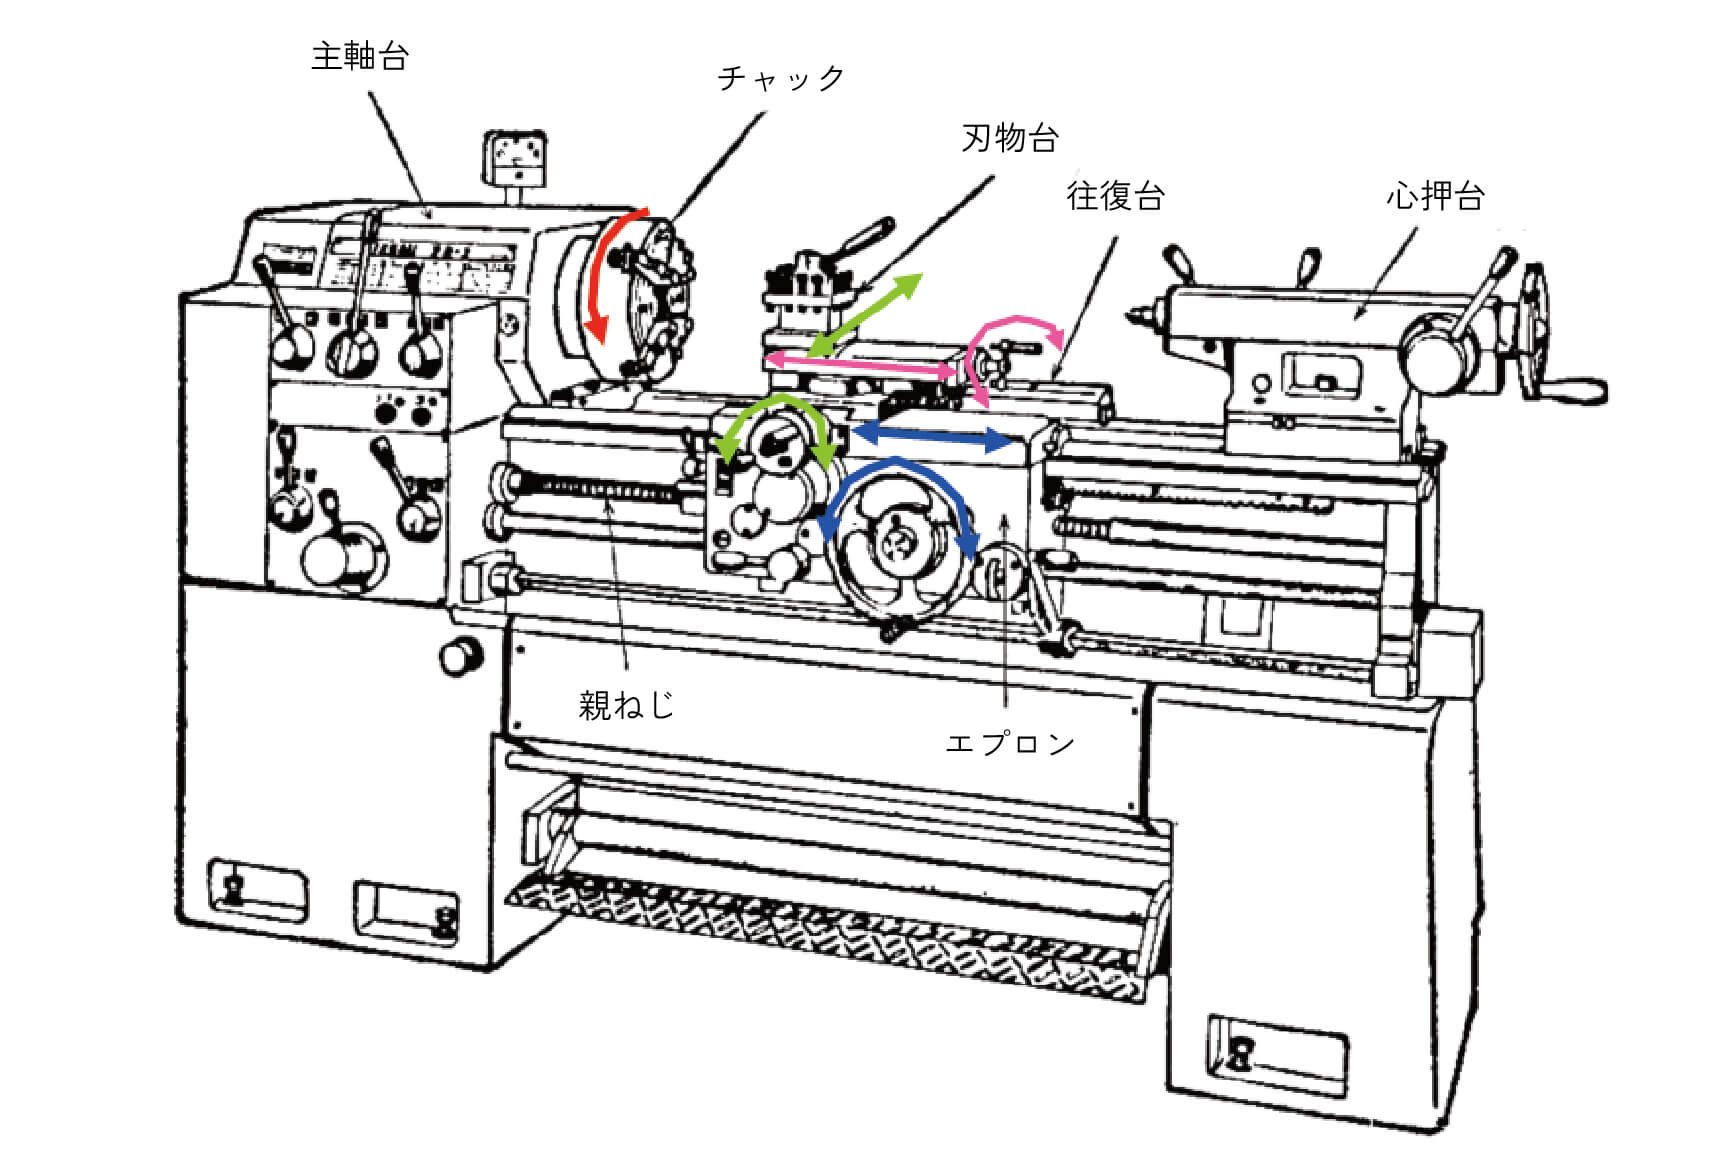 図1 工作機械の構成要素